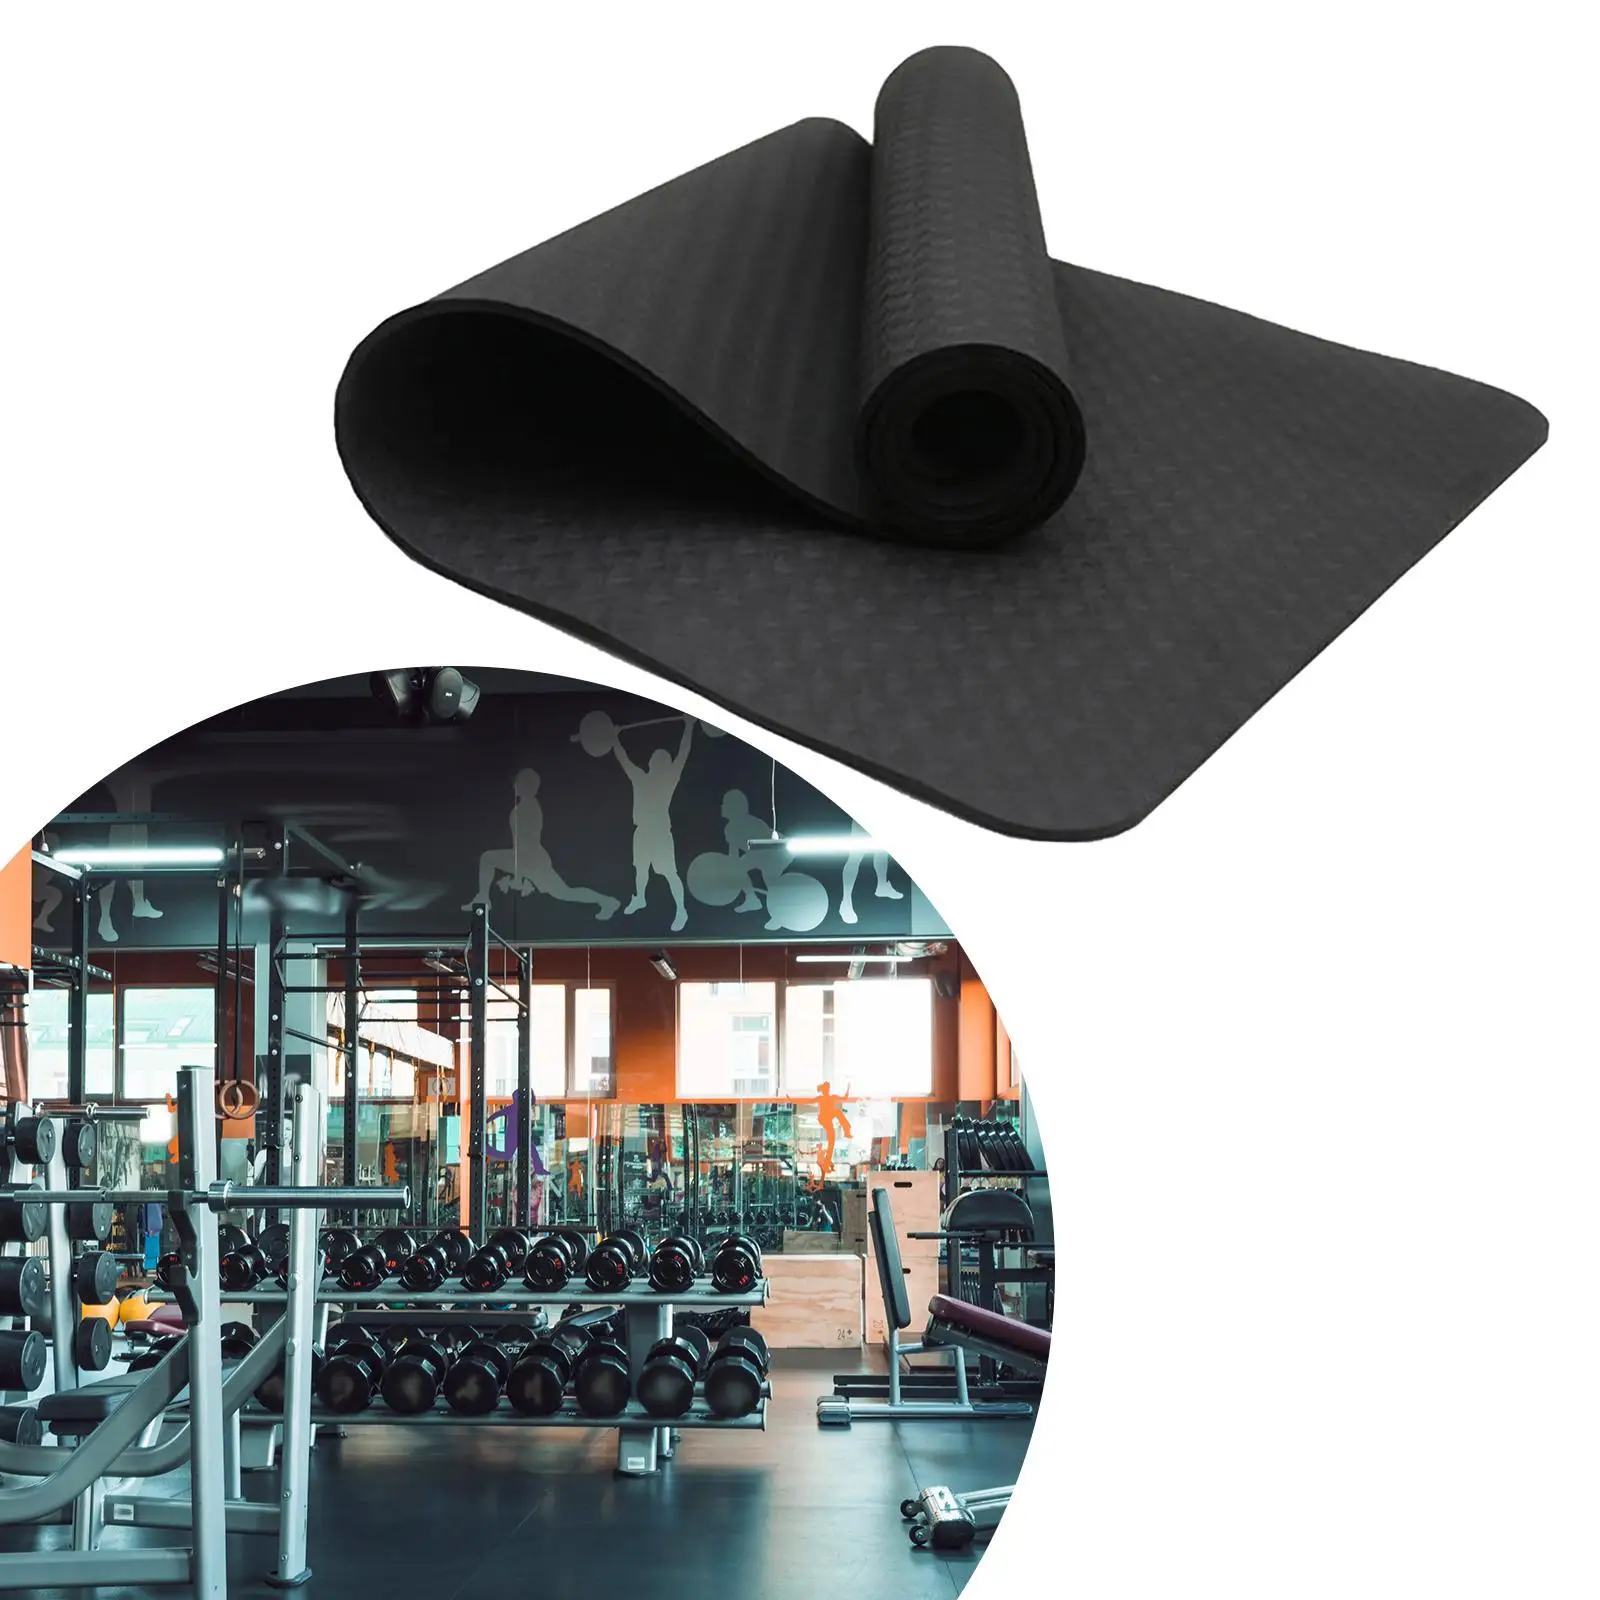 Yoga Mat Black for Men Women Anti Tear Nonslip Fitness Mat Pilates Mat for Fitness Workouts Stretching Household Home Yoga Floor